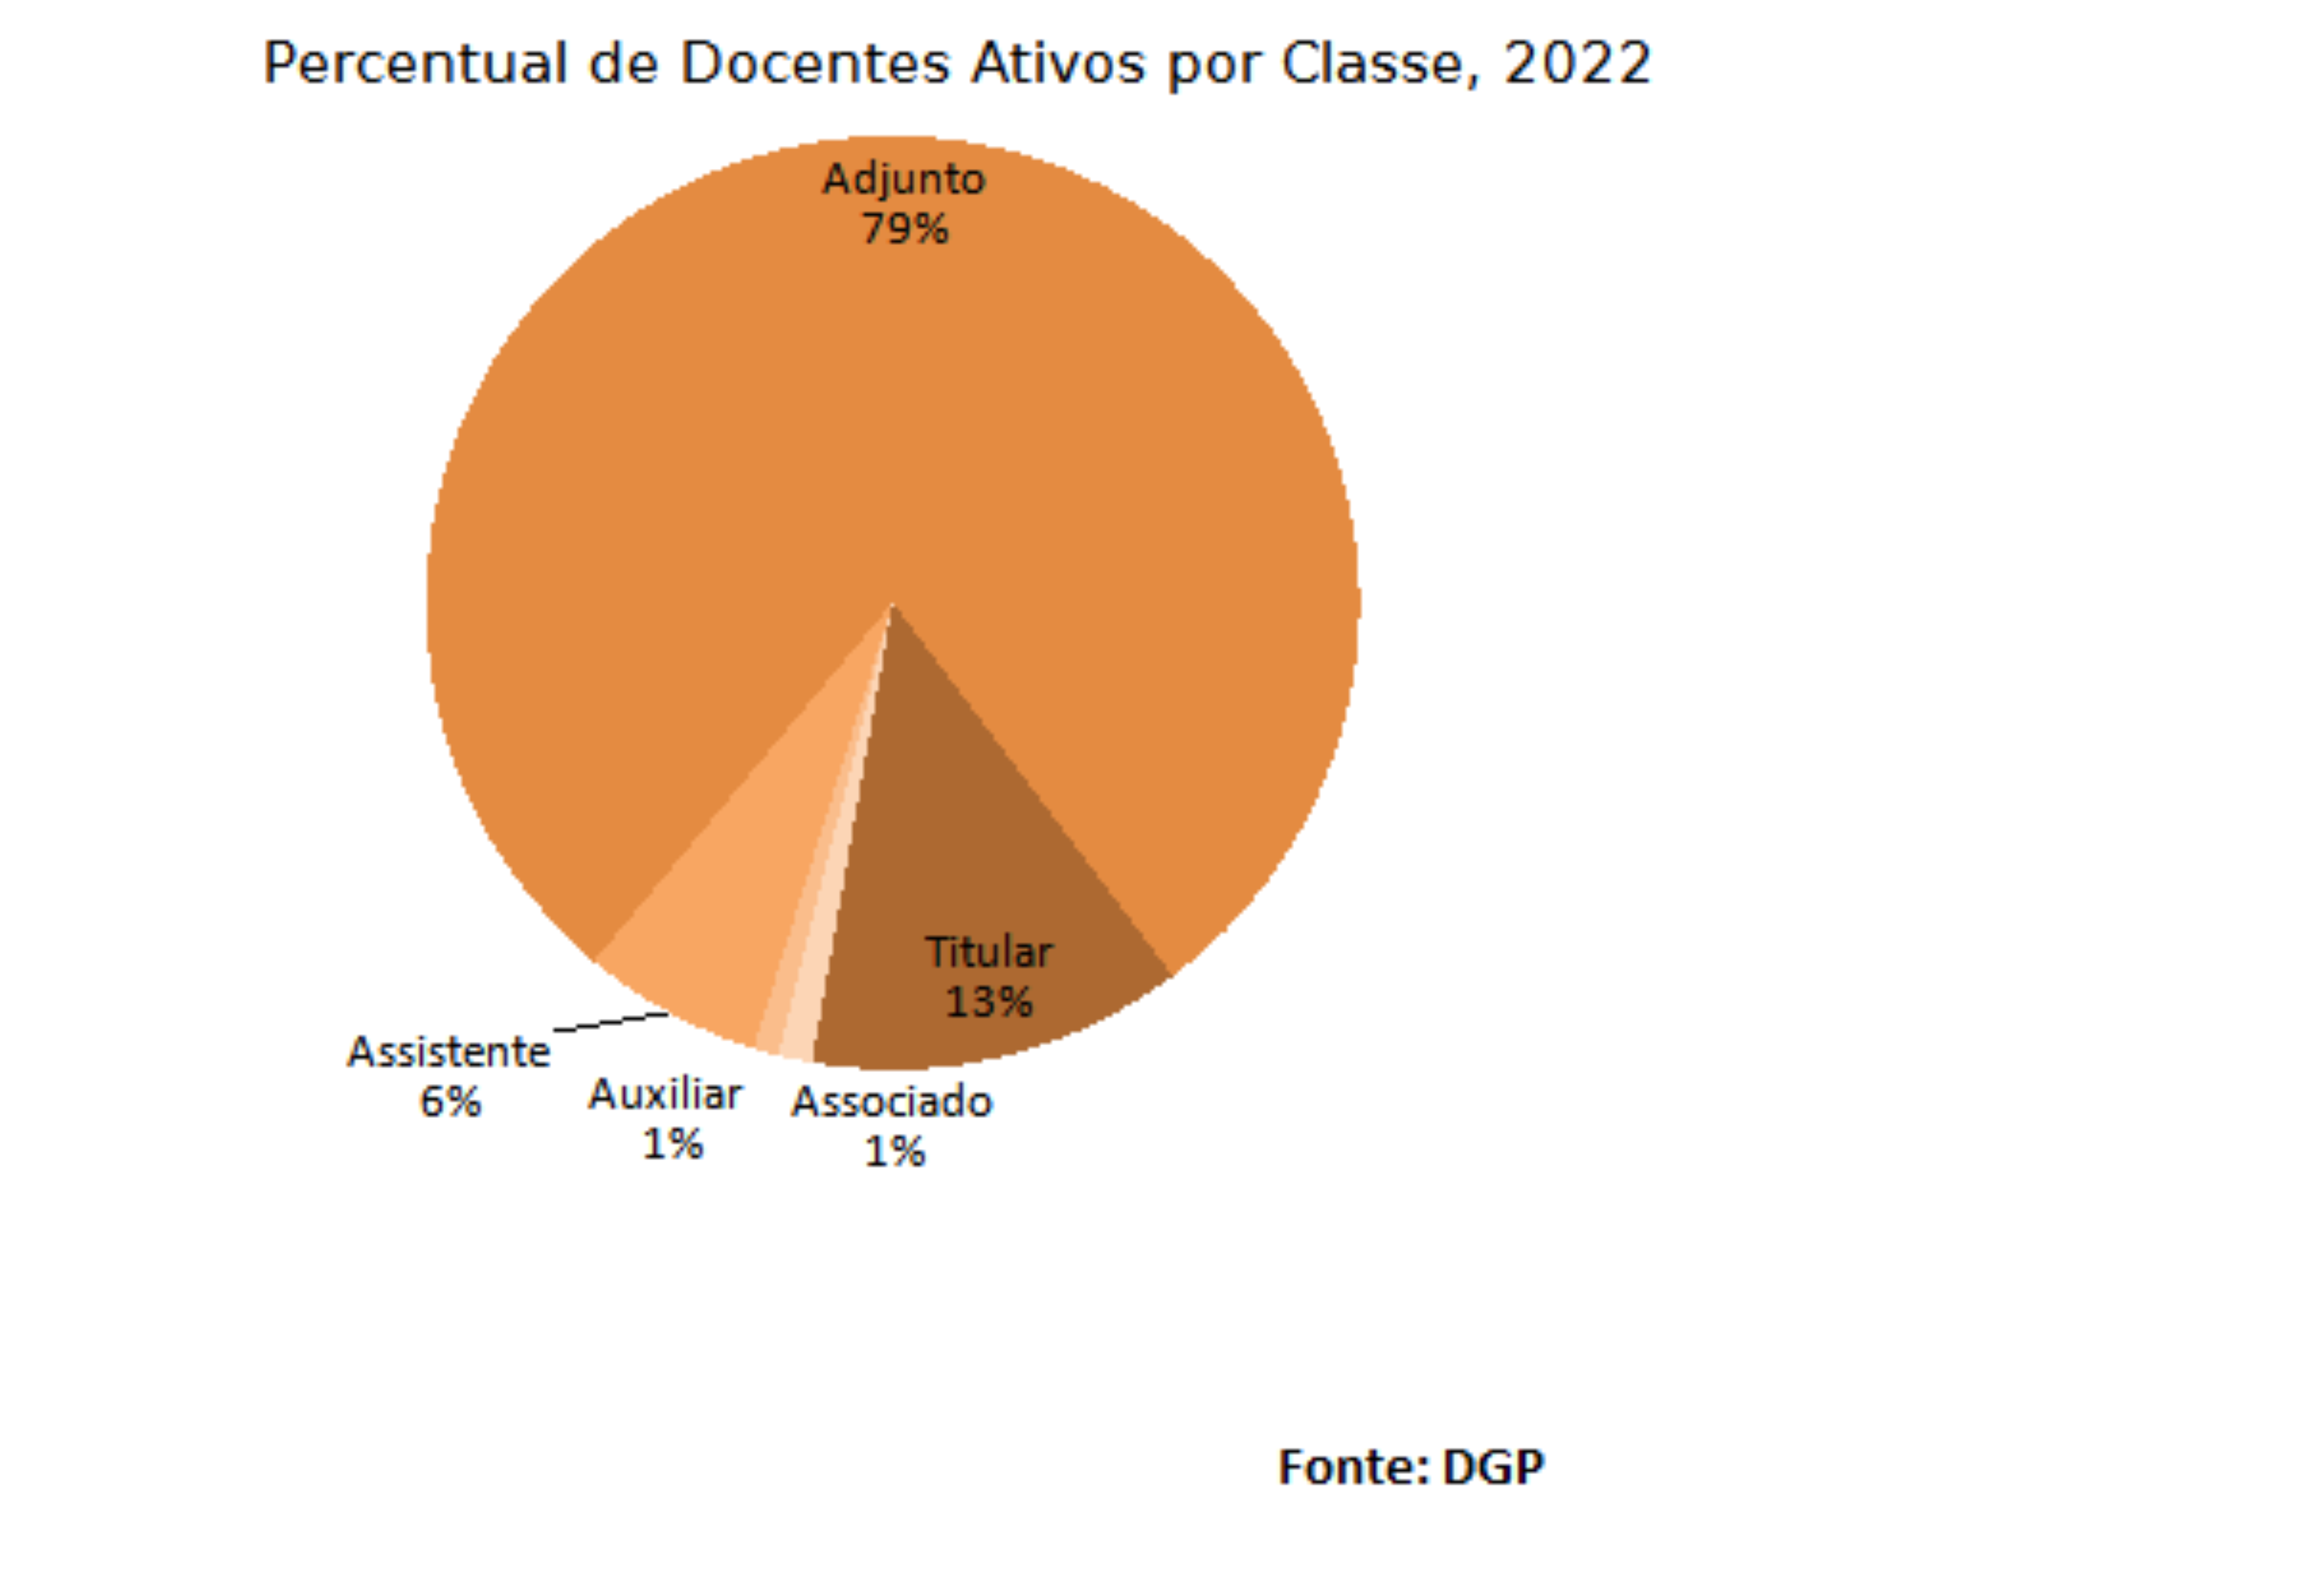 Percentual de docentes ativos por classe, 2022